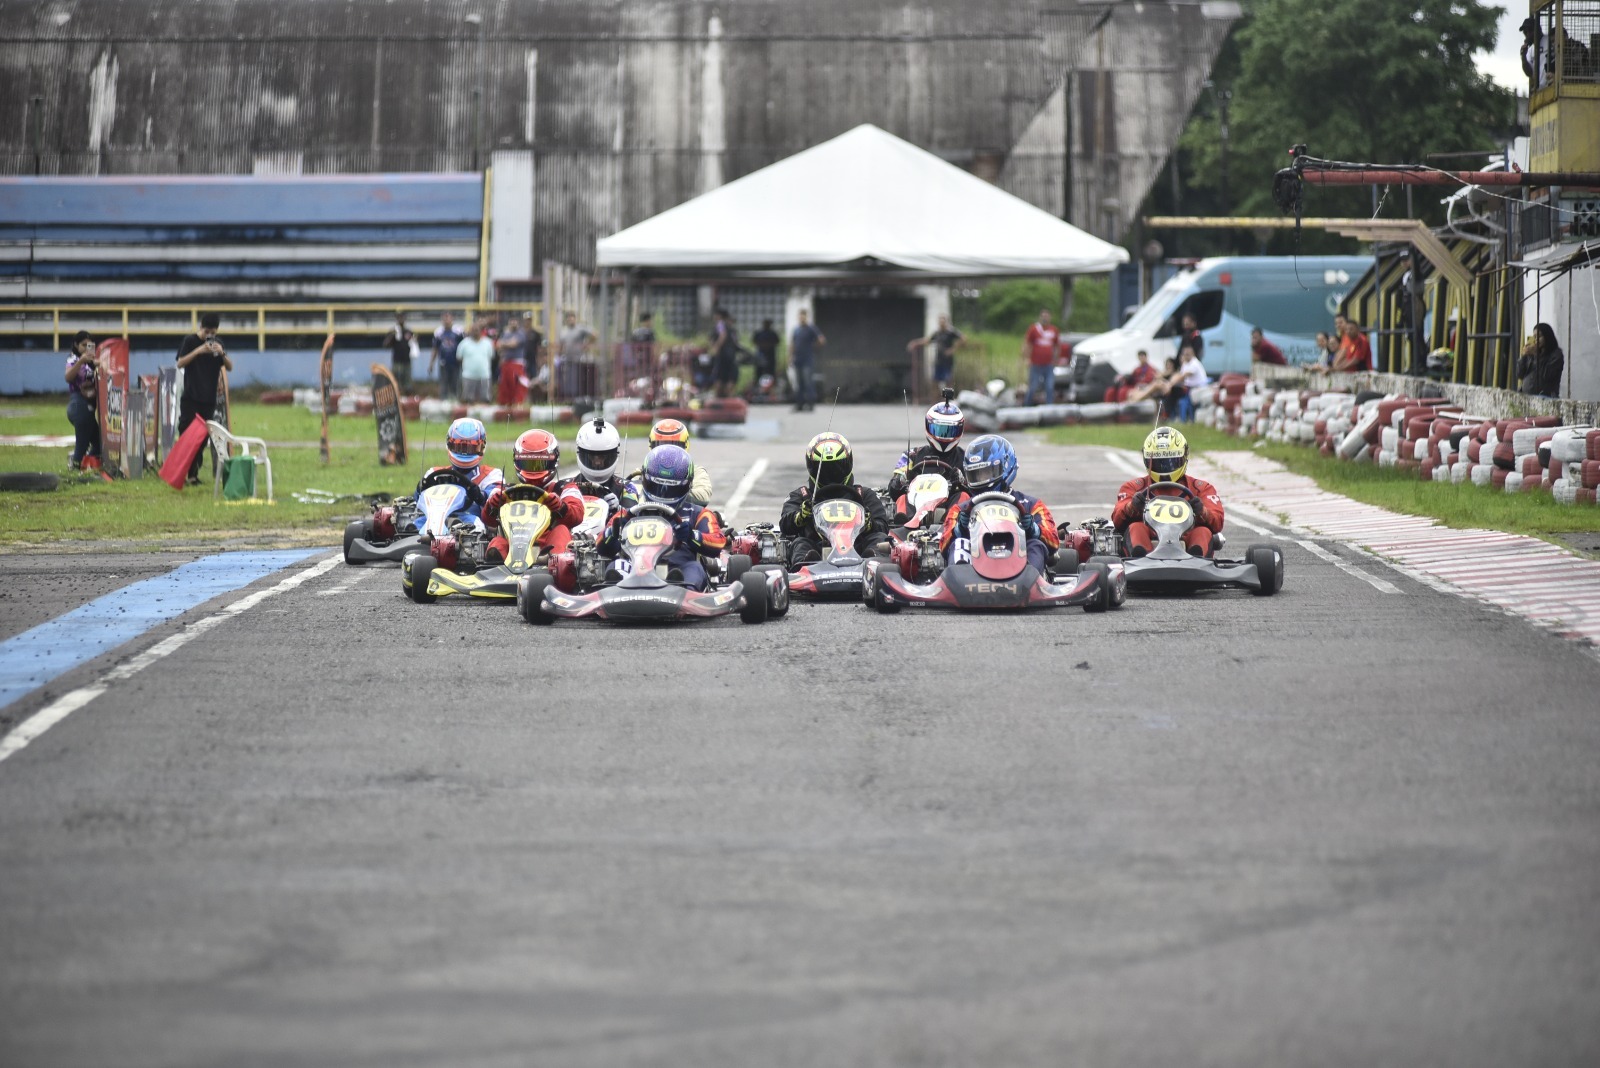 Kartódromo da Vila Olímpica sediou 1ª Etapa Amazonense de Kart